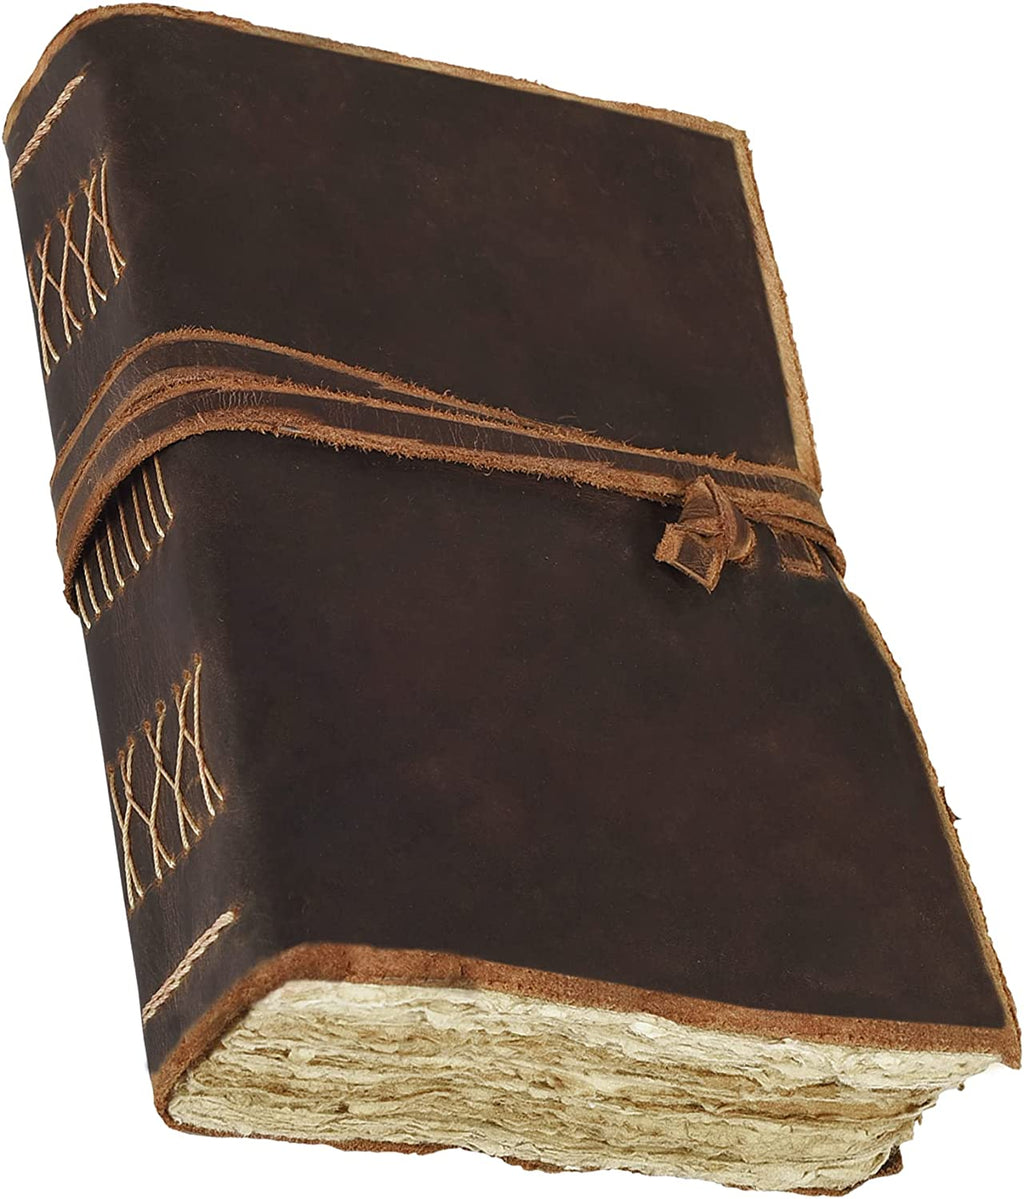 Vintage Leather Journal Blank Deckle Paper - Rustic Teak (5.5 x 4)